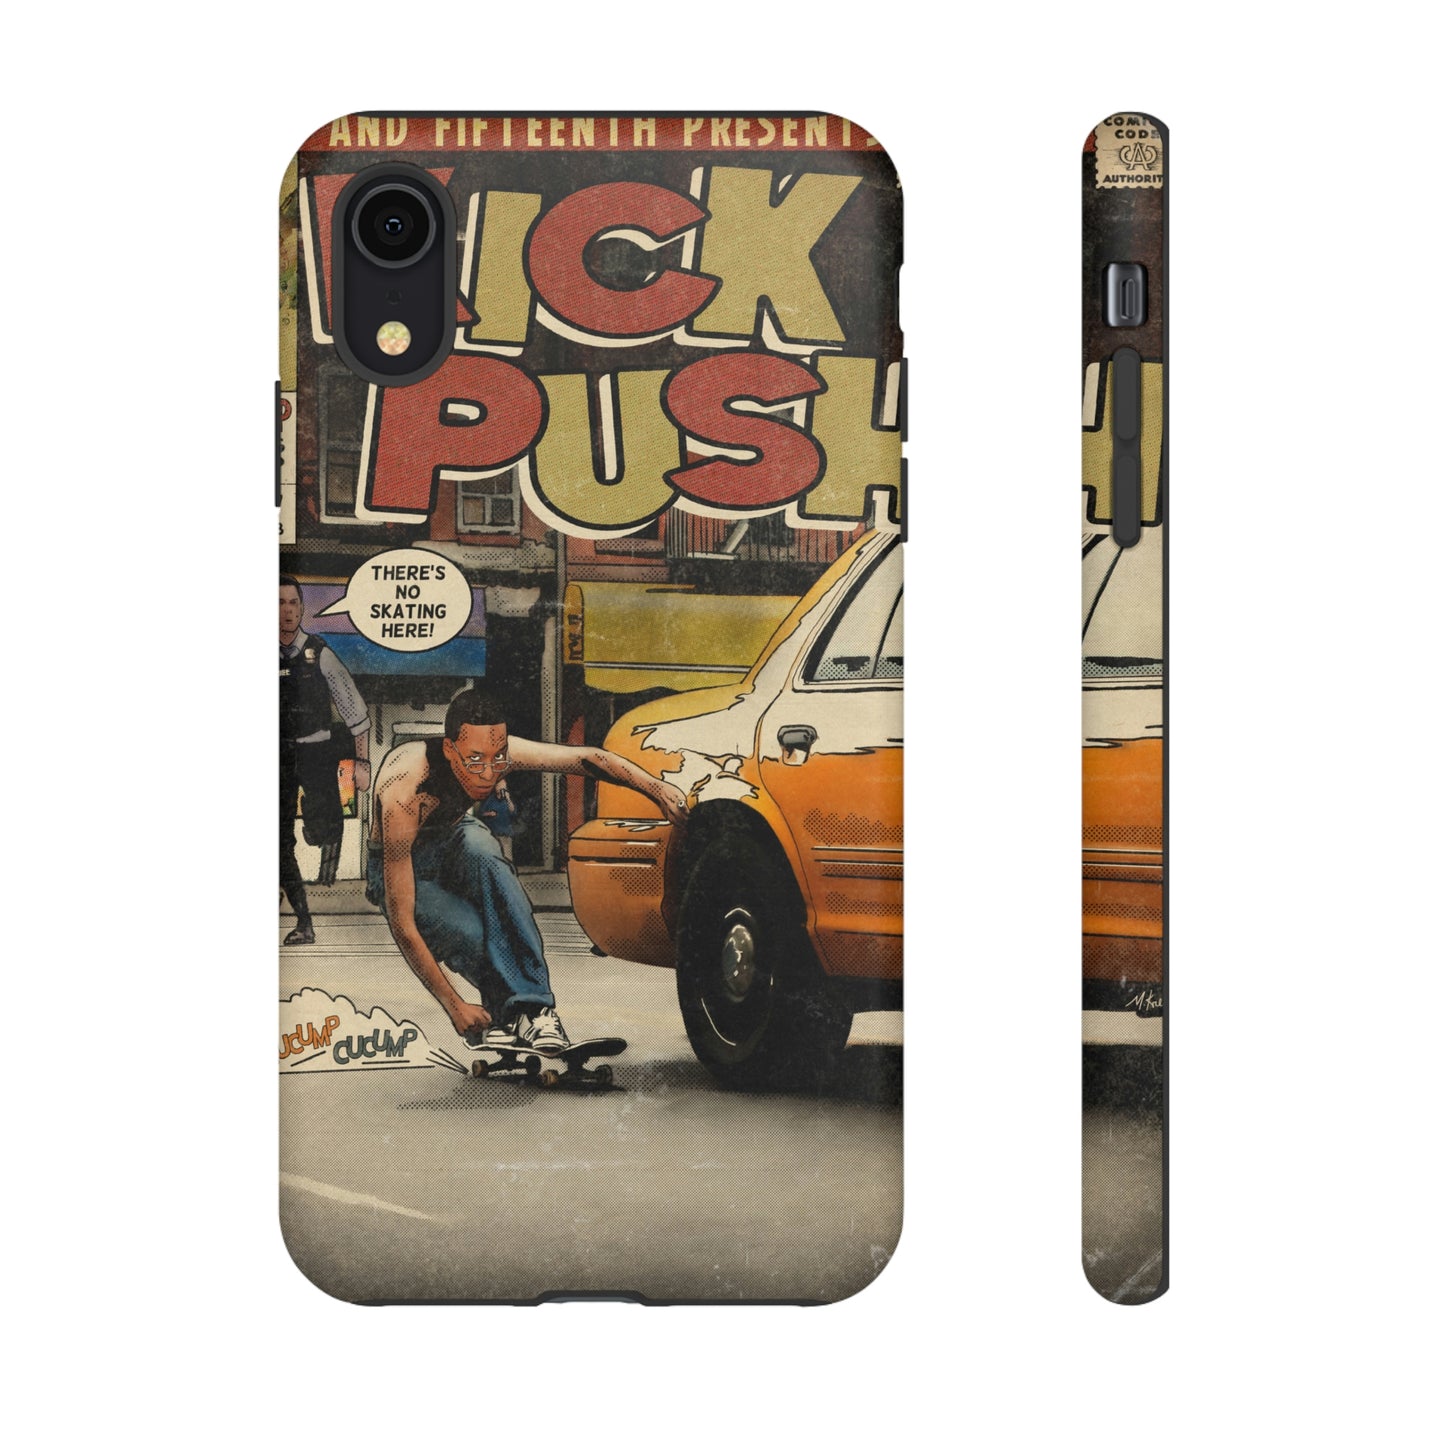 Lupe Fiasco - Kick Push - Tough Phone Cases